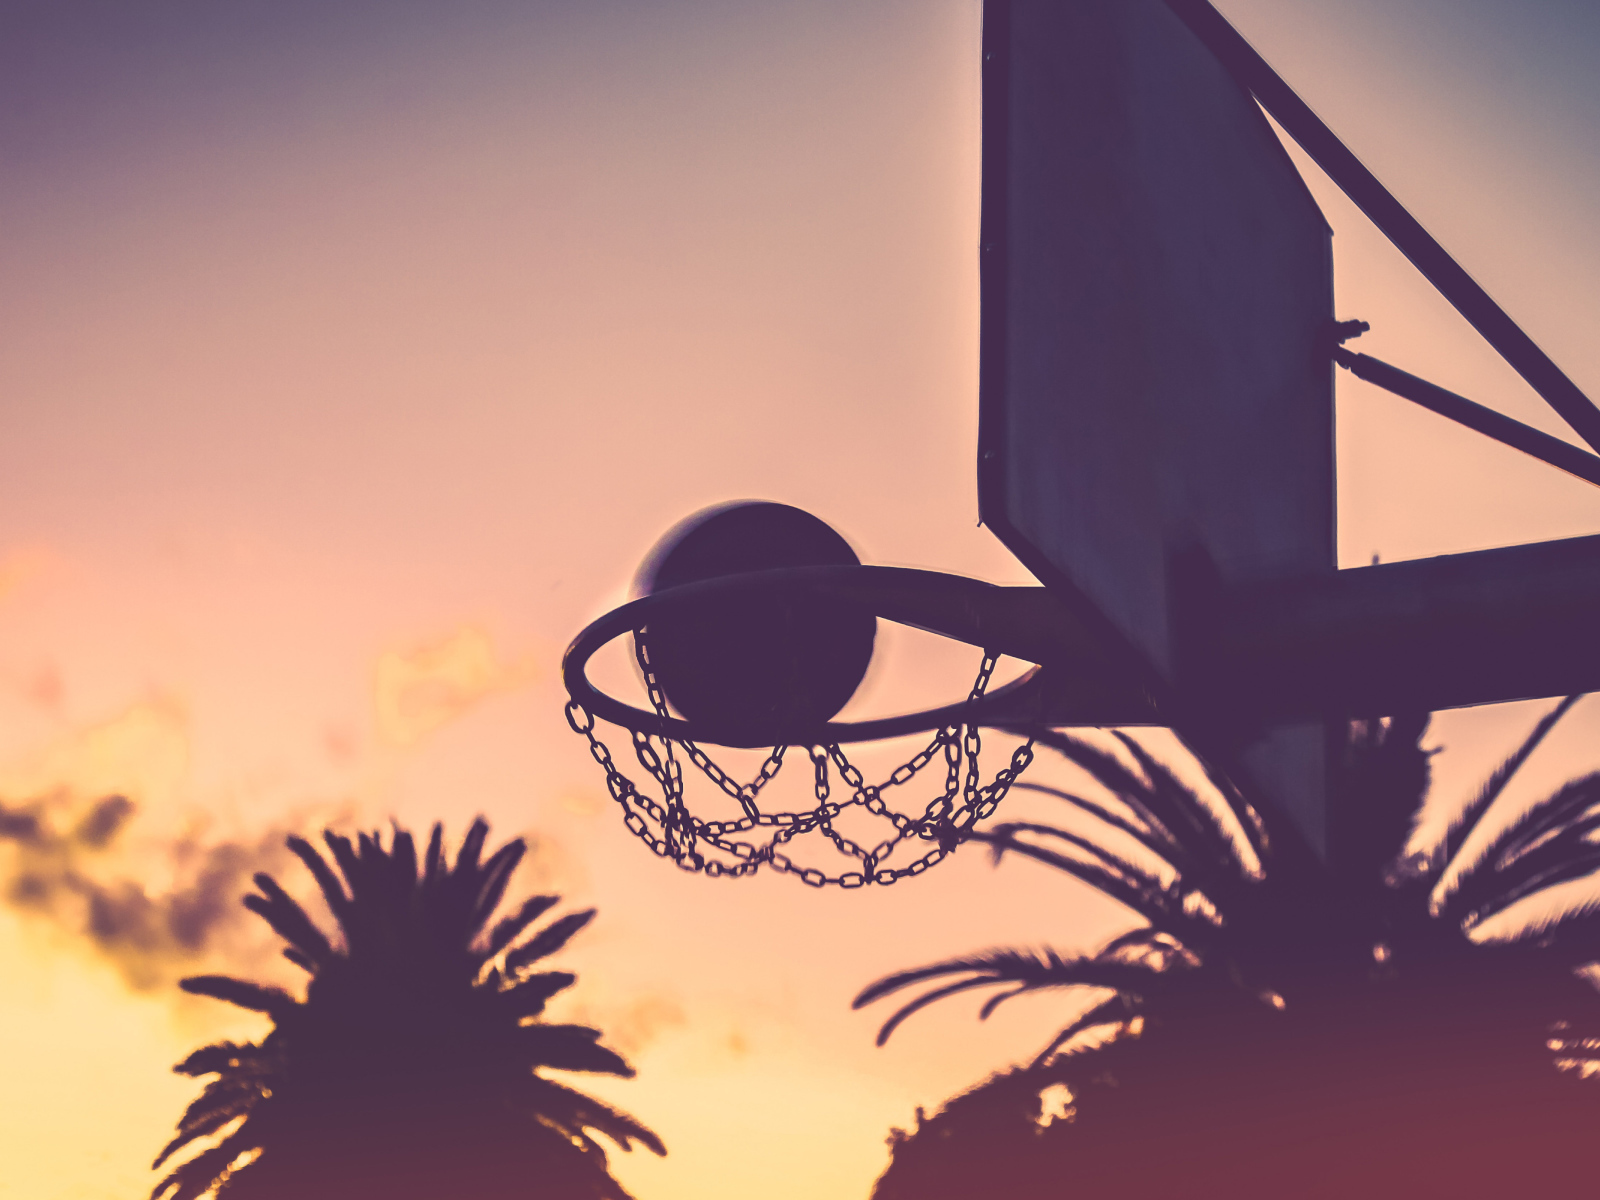 Баскетбольное кольцо с мячом на закате